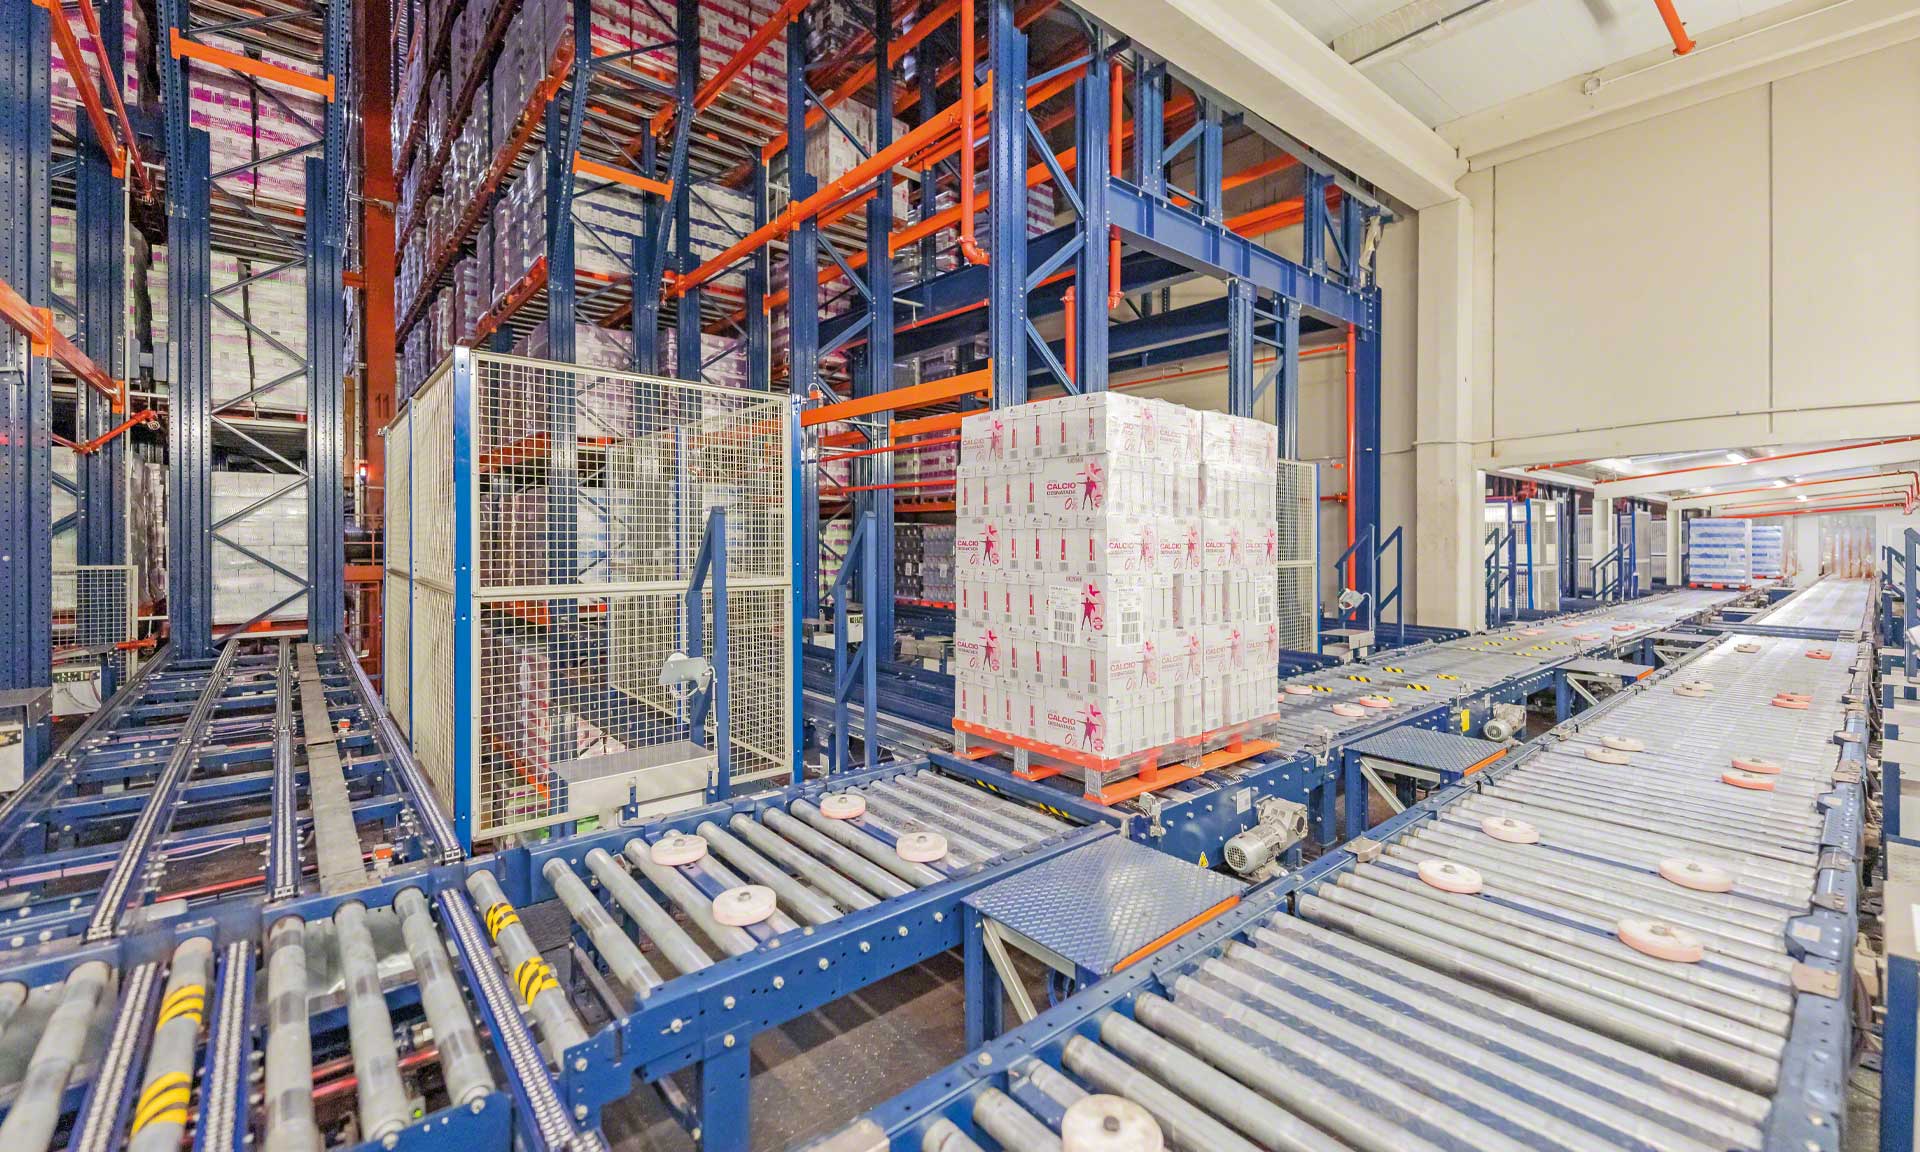 Esnelat automatiza su logística con dos depósitos automáticos para productos lácteos